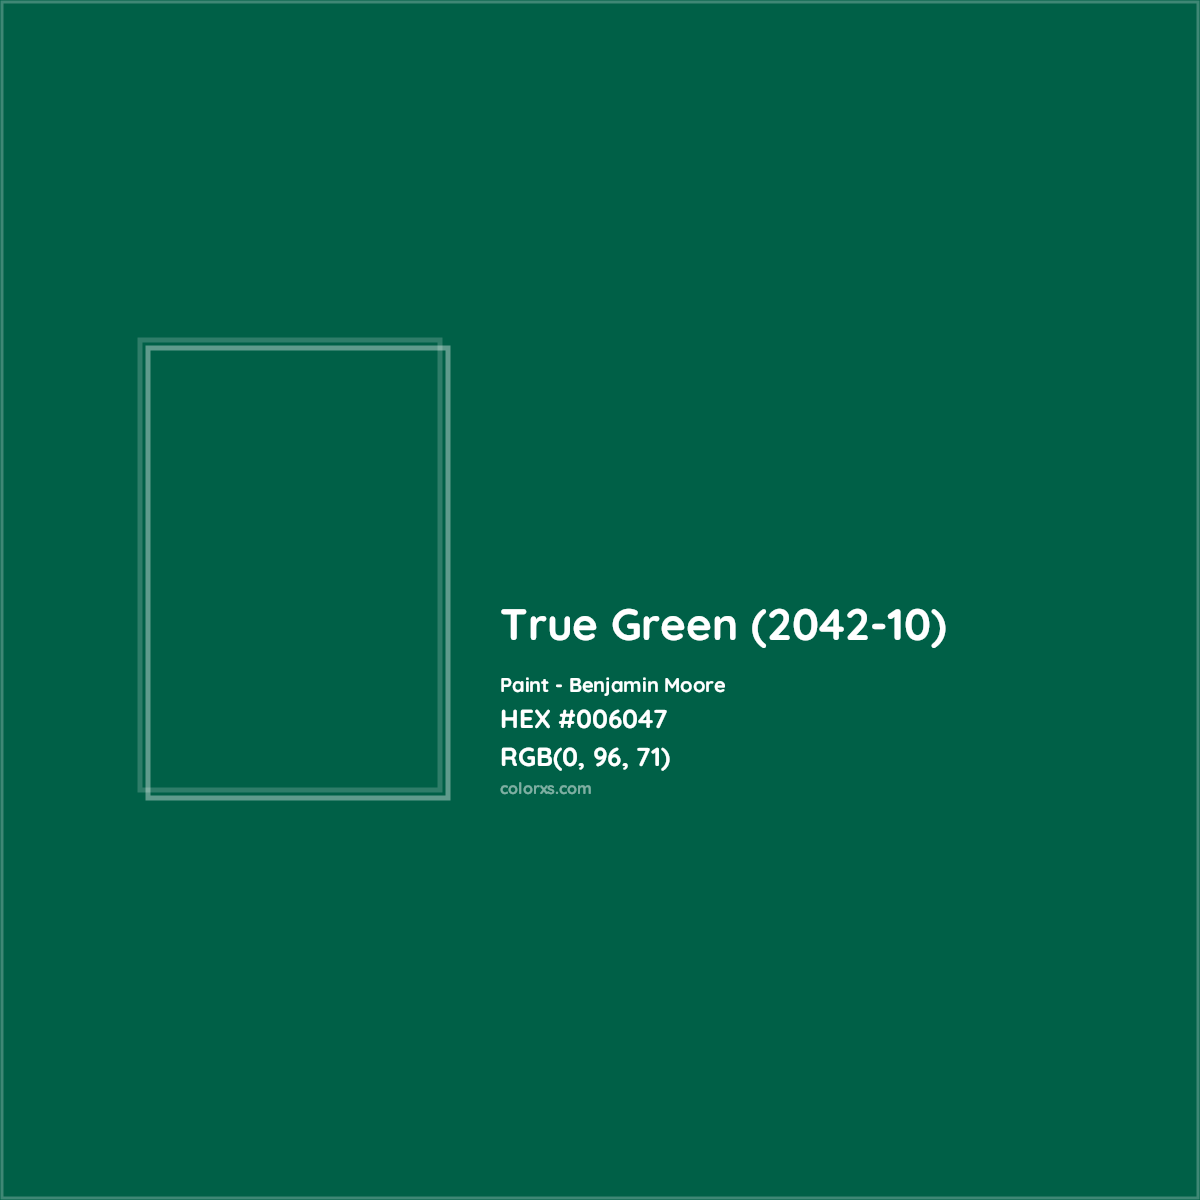 HEX #006047 True Green (2042-10) Paint Benjamin Moore - Color Code